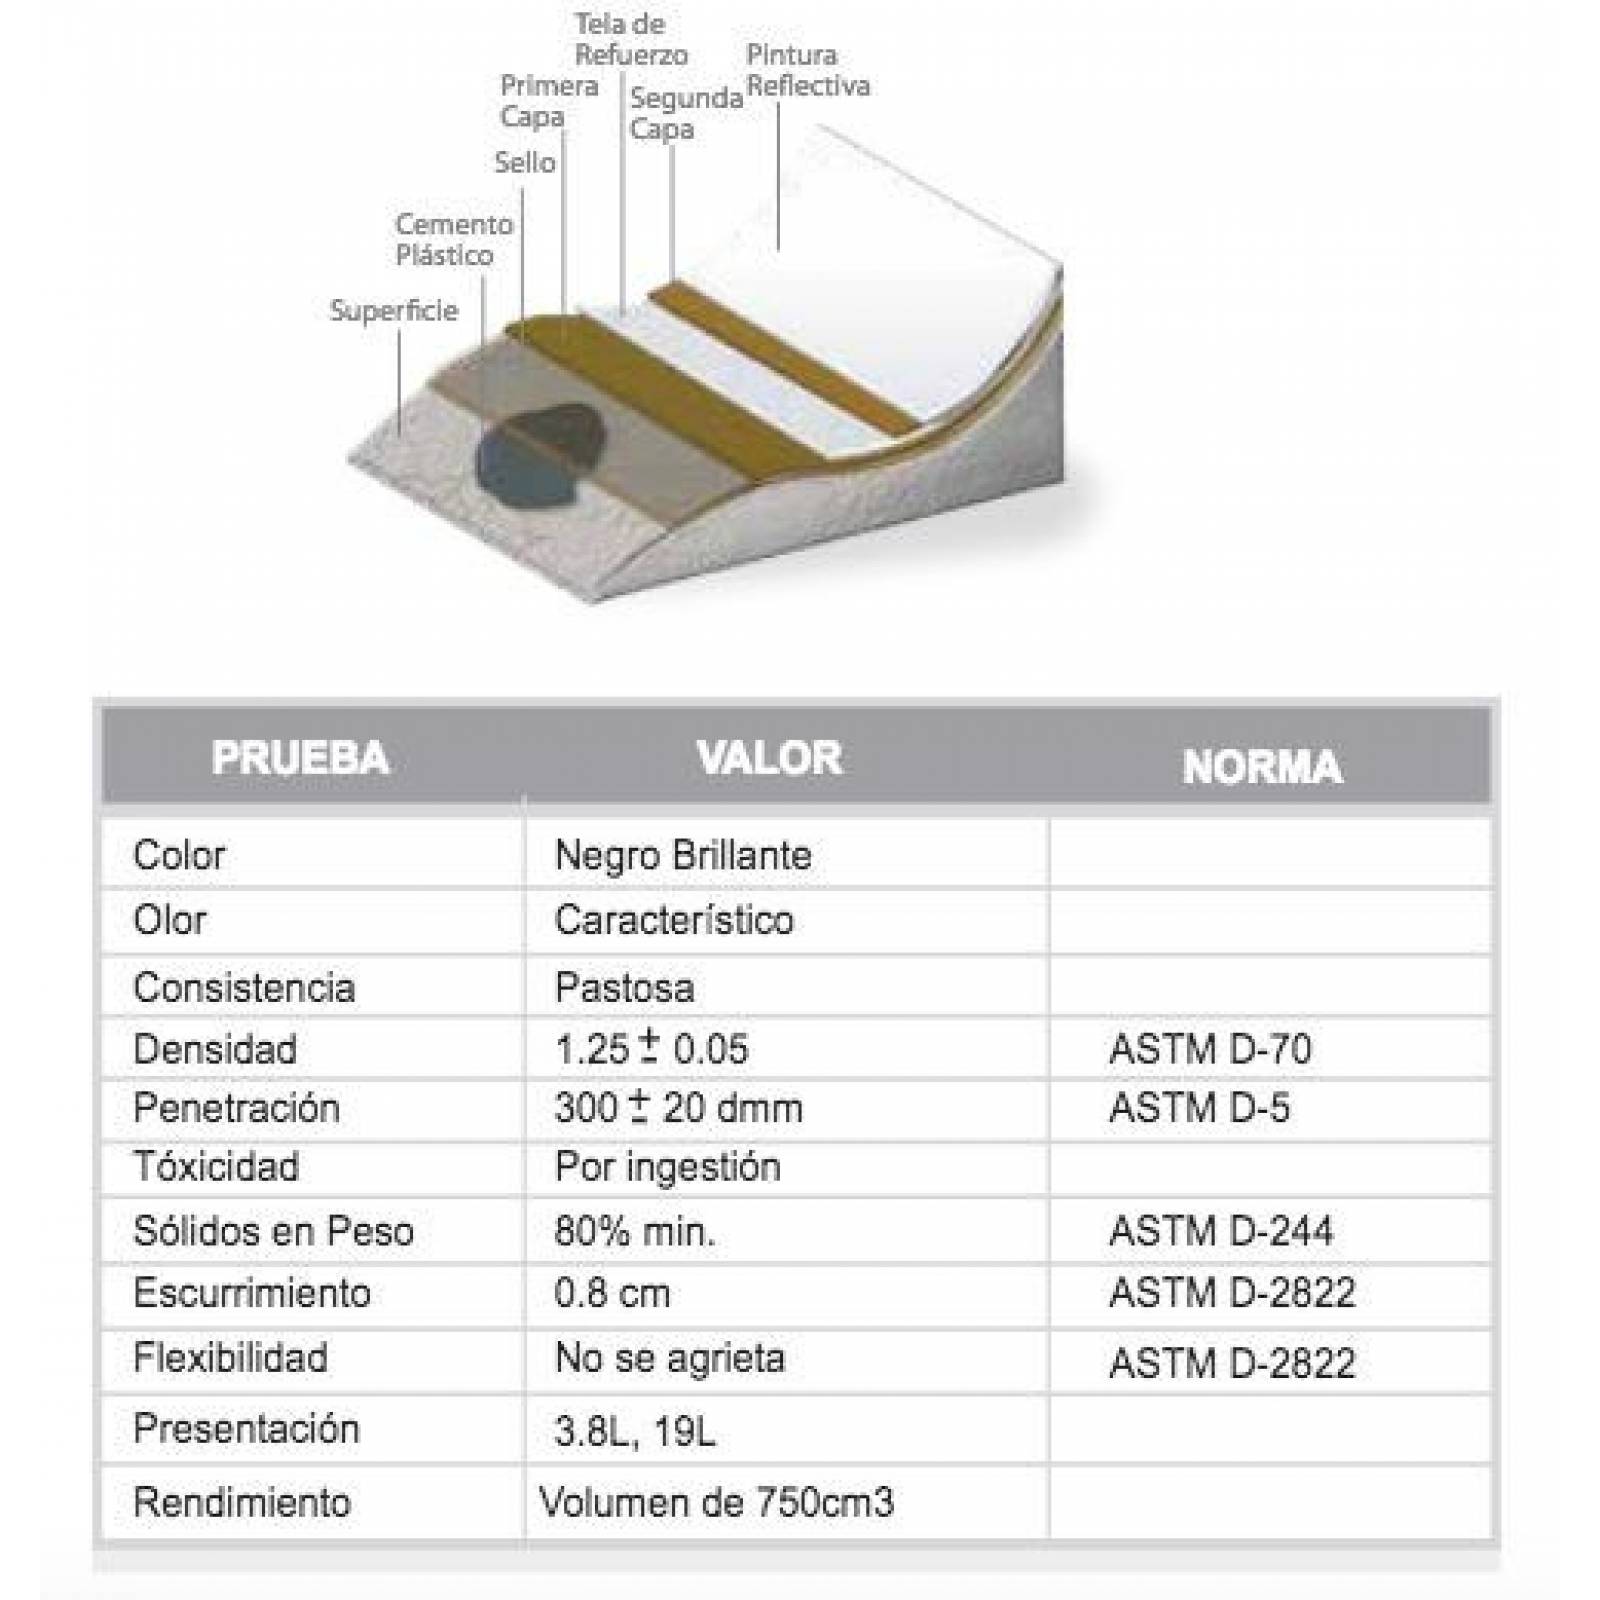 IMPAC Cement 3.9 Lts Cemento Plastico Asfaltico 2 Pack 